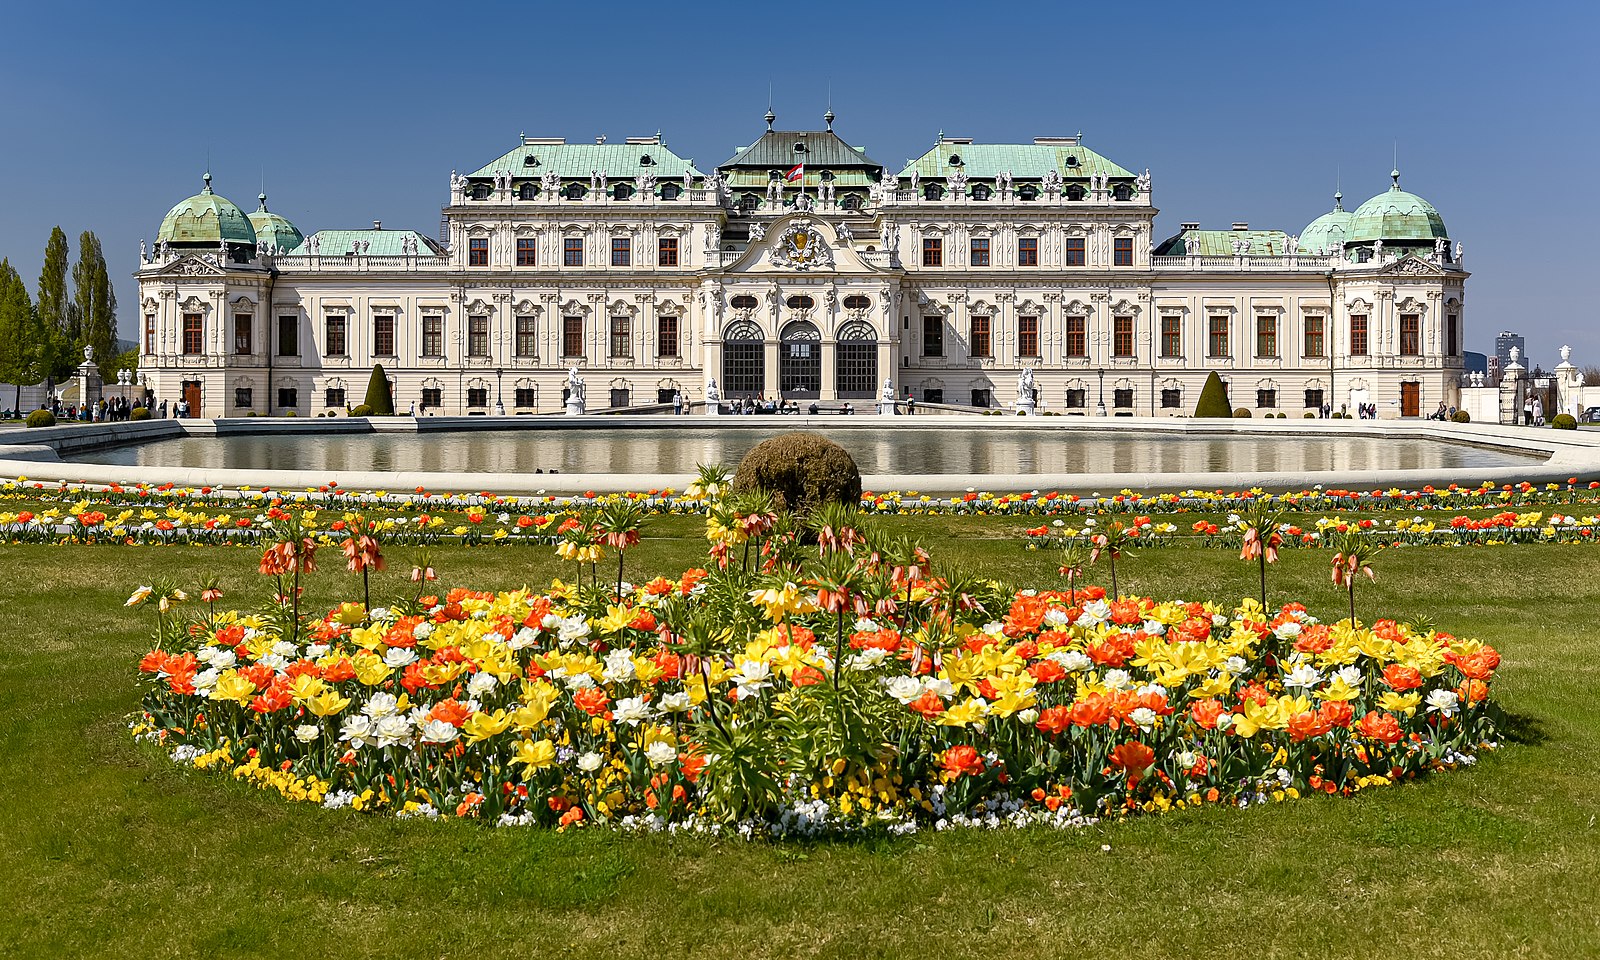 Vienna - Belvedere